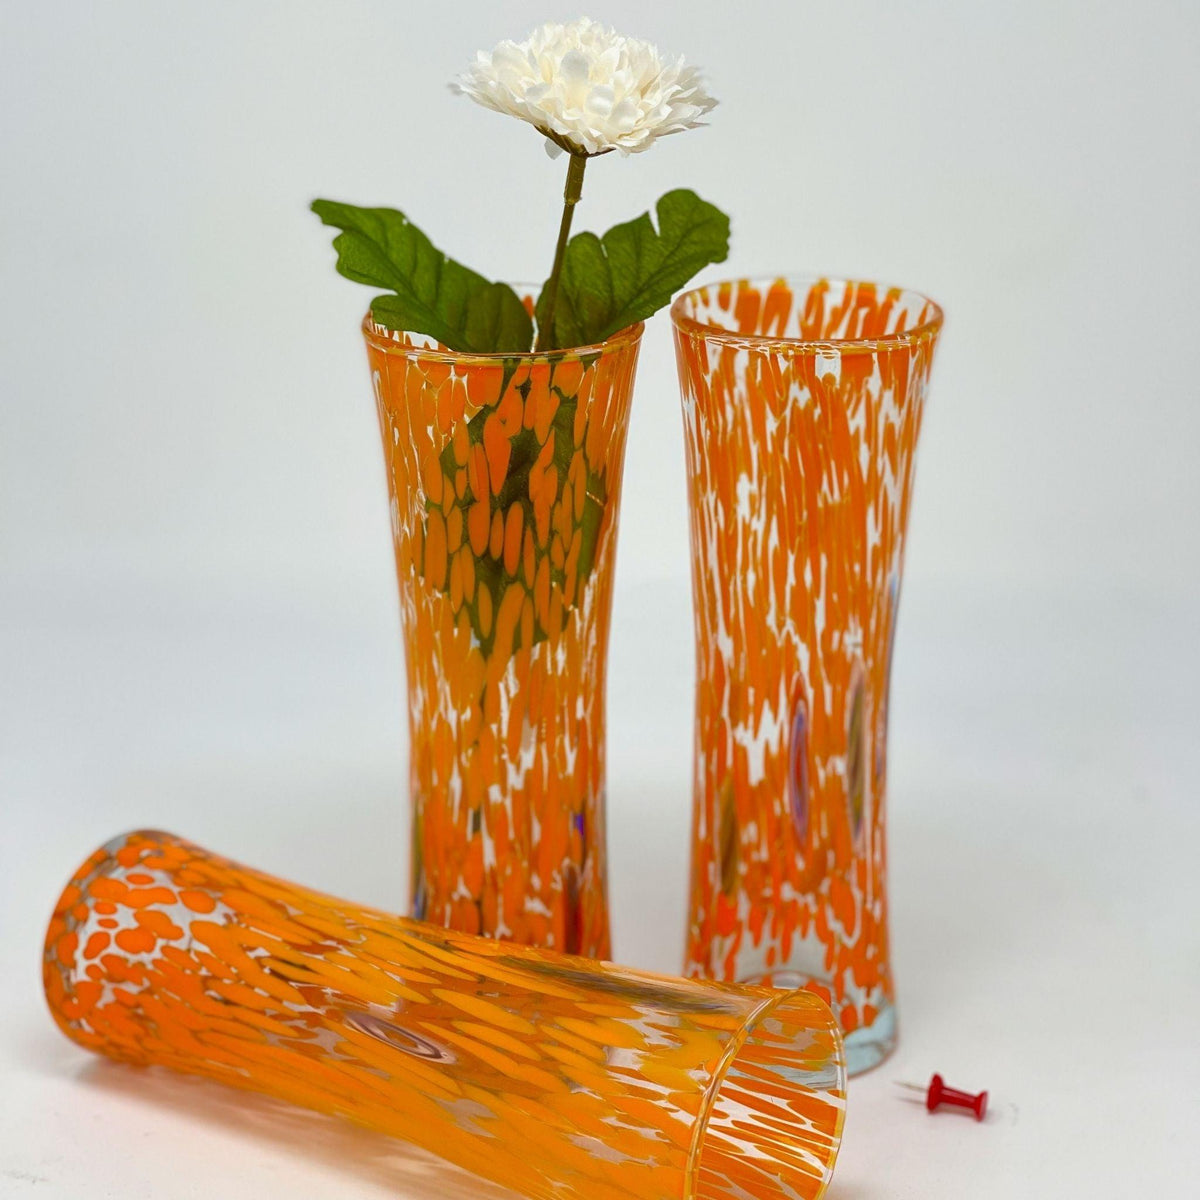 Murano Glass Bud Vase, Contemporary, Made in Italy at MyItalianDecor